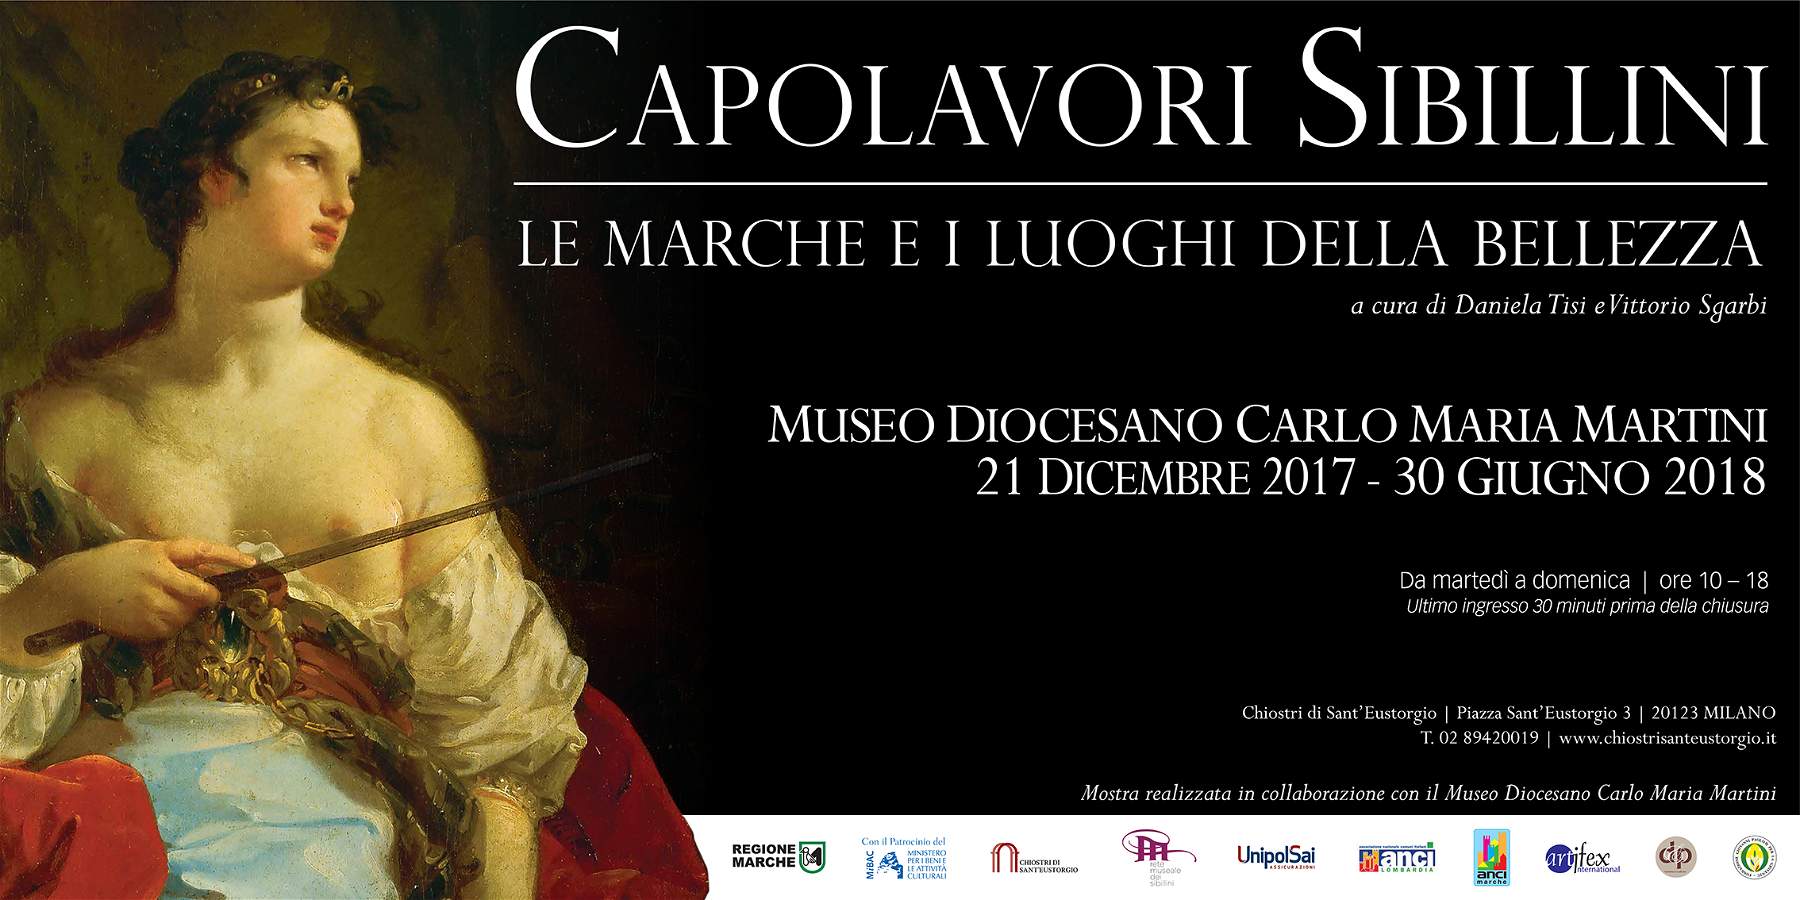 I capolavori sibillini dalle Marche in mostra a Milano